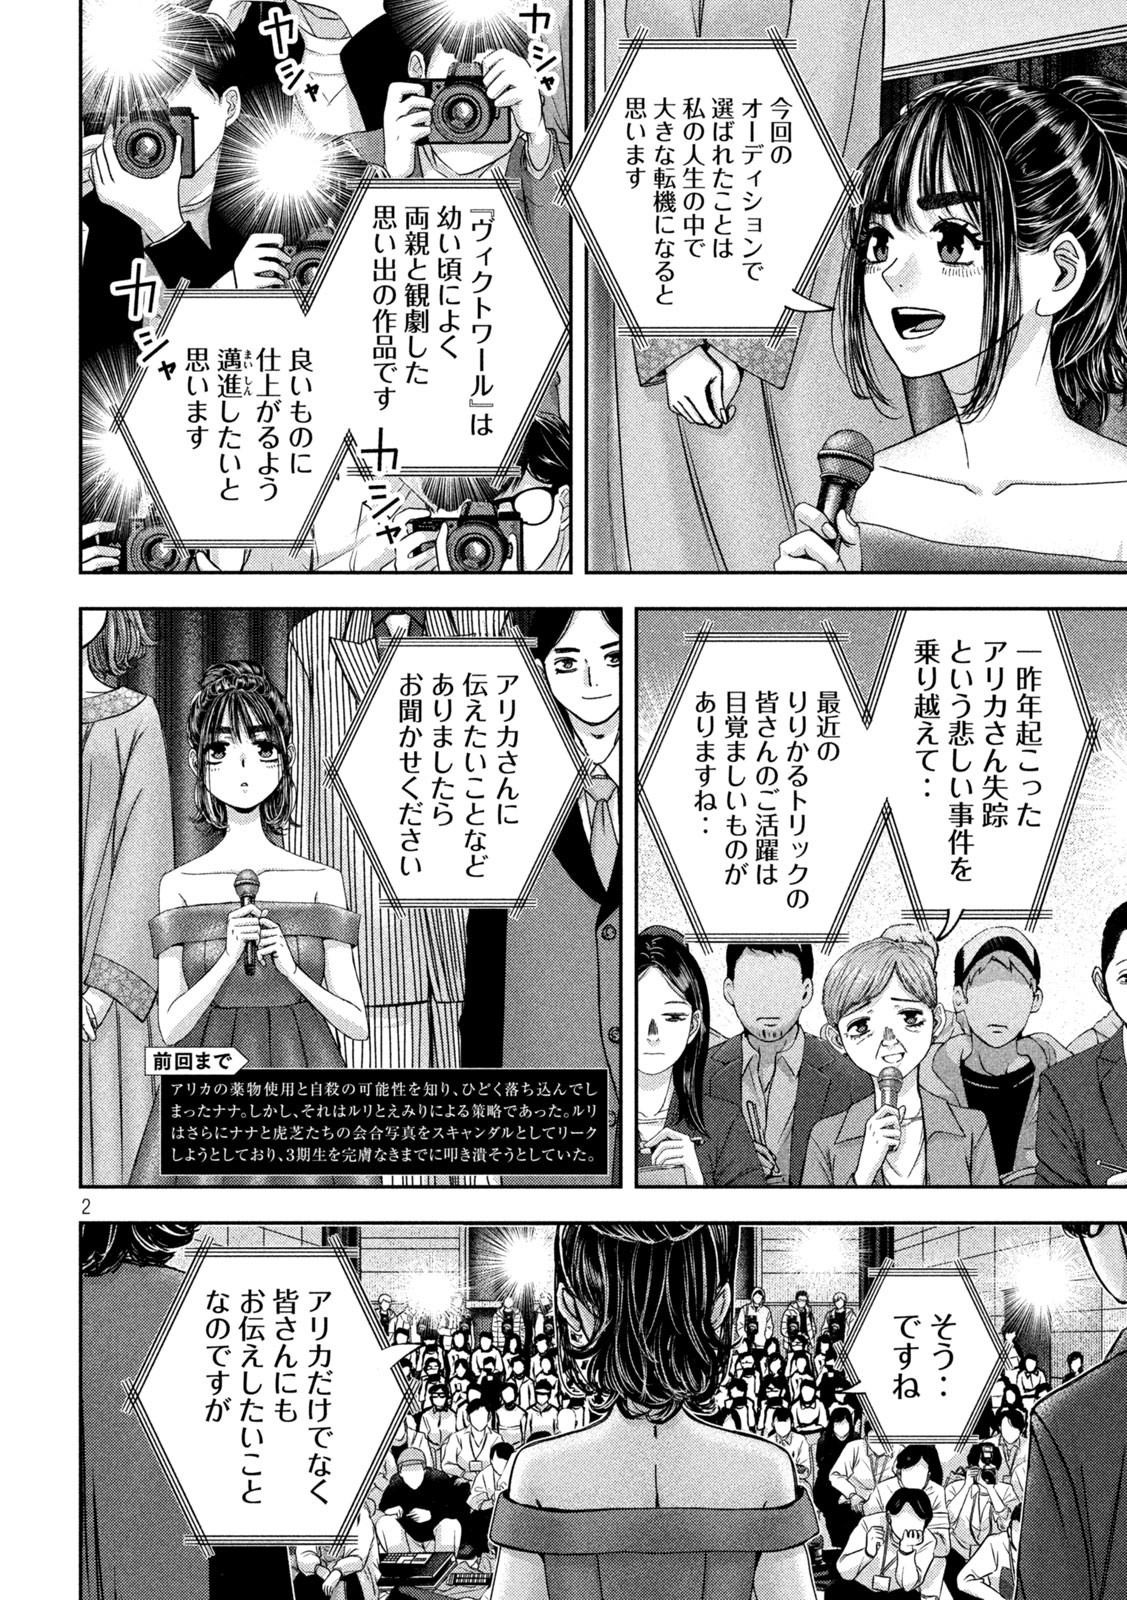 Watashi no Arika - Chapter 45 - Page 2